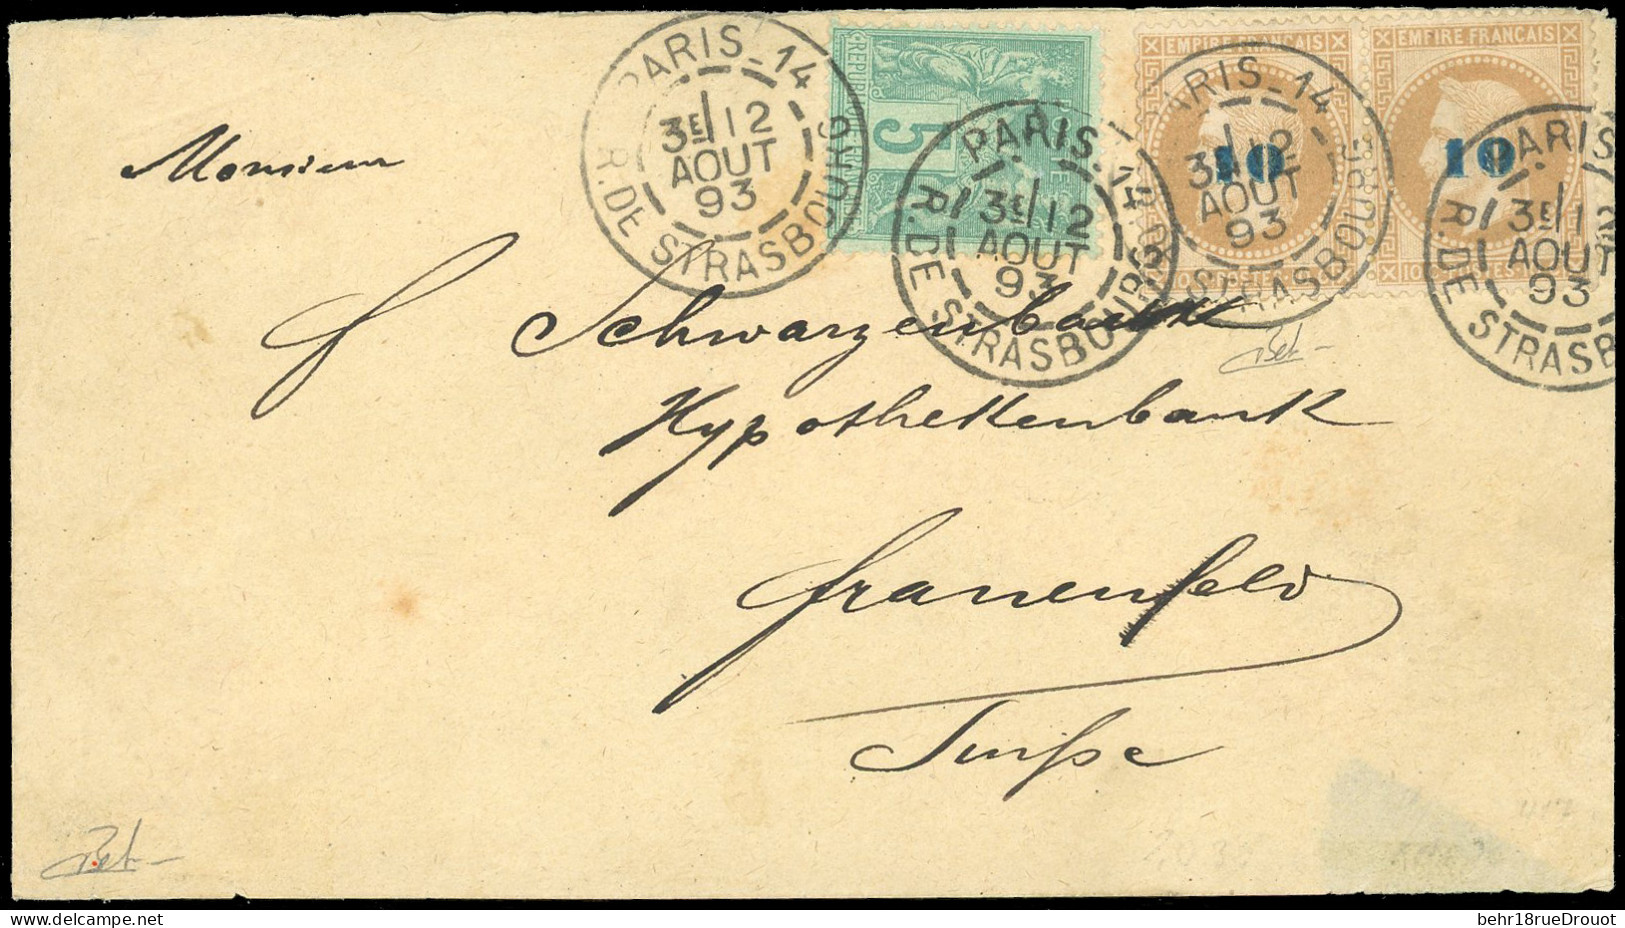 Obl. 34 - Paire Du 10 S/10c. Lauré + 5c. Sage Obl. S/lettre Frappée Du CàD De PARIS - R. DE STRASBOURG Du 2 Août 1893 à  - 1863-1870 Napoleon III With Laurels